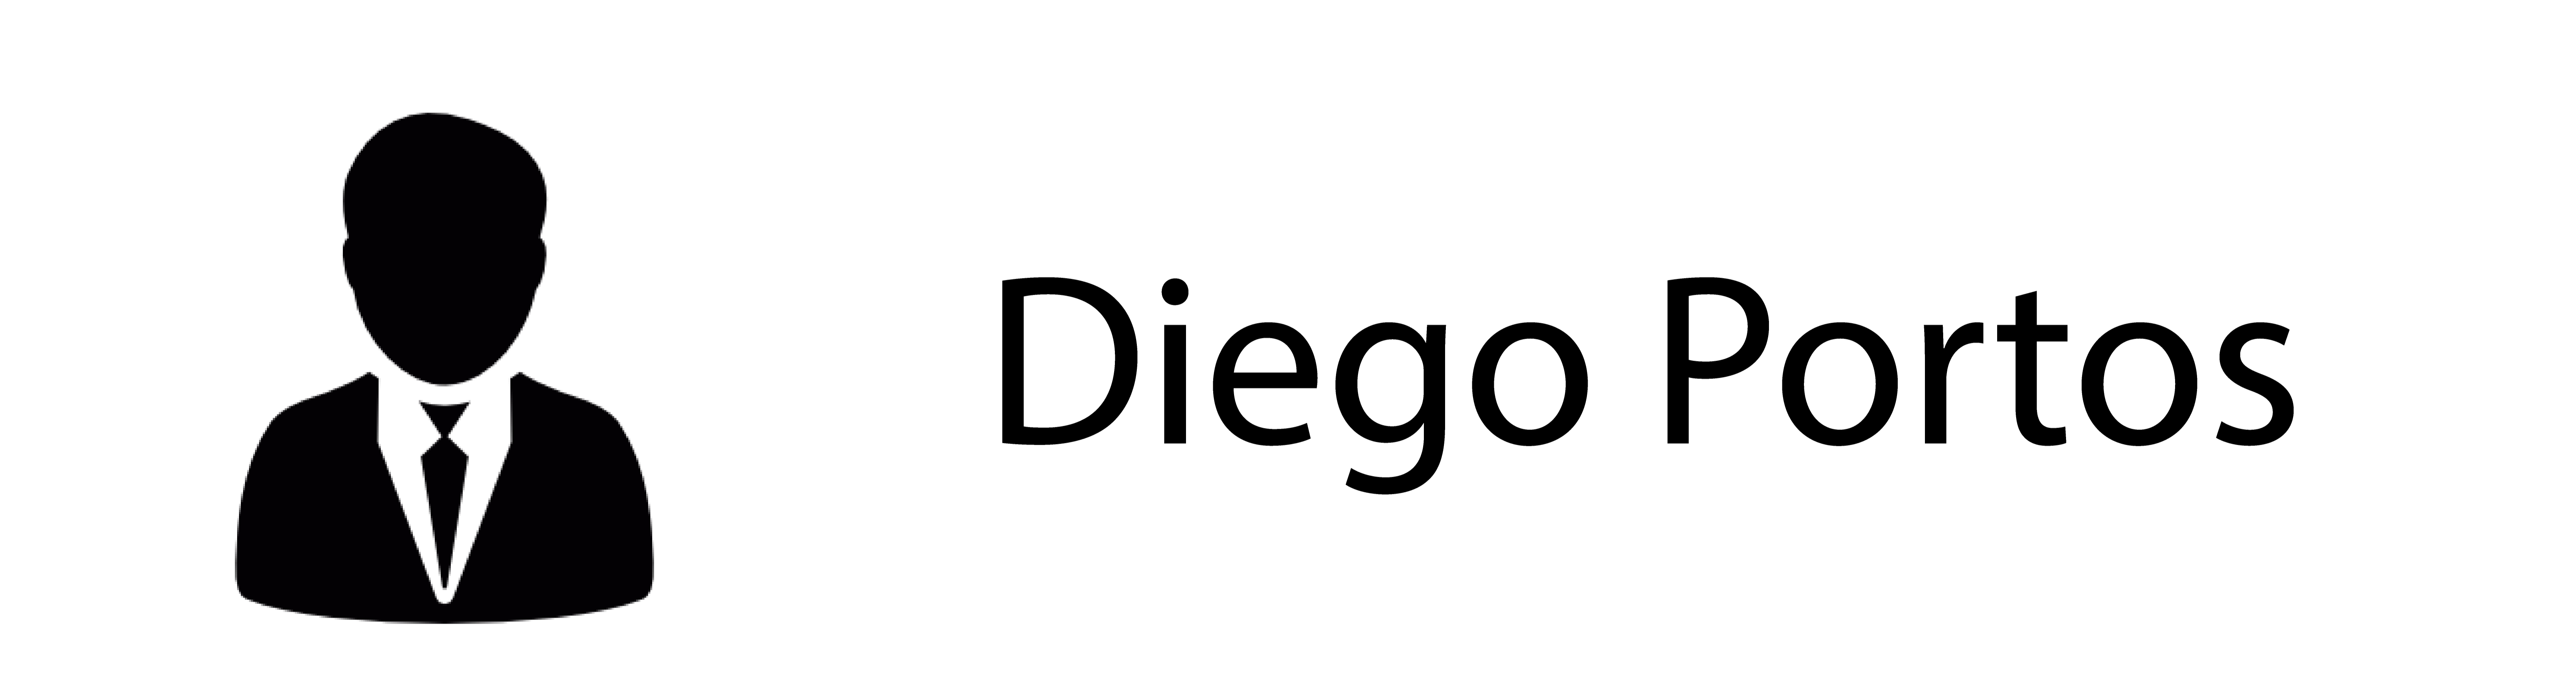 Diego Portos